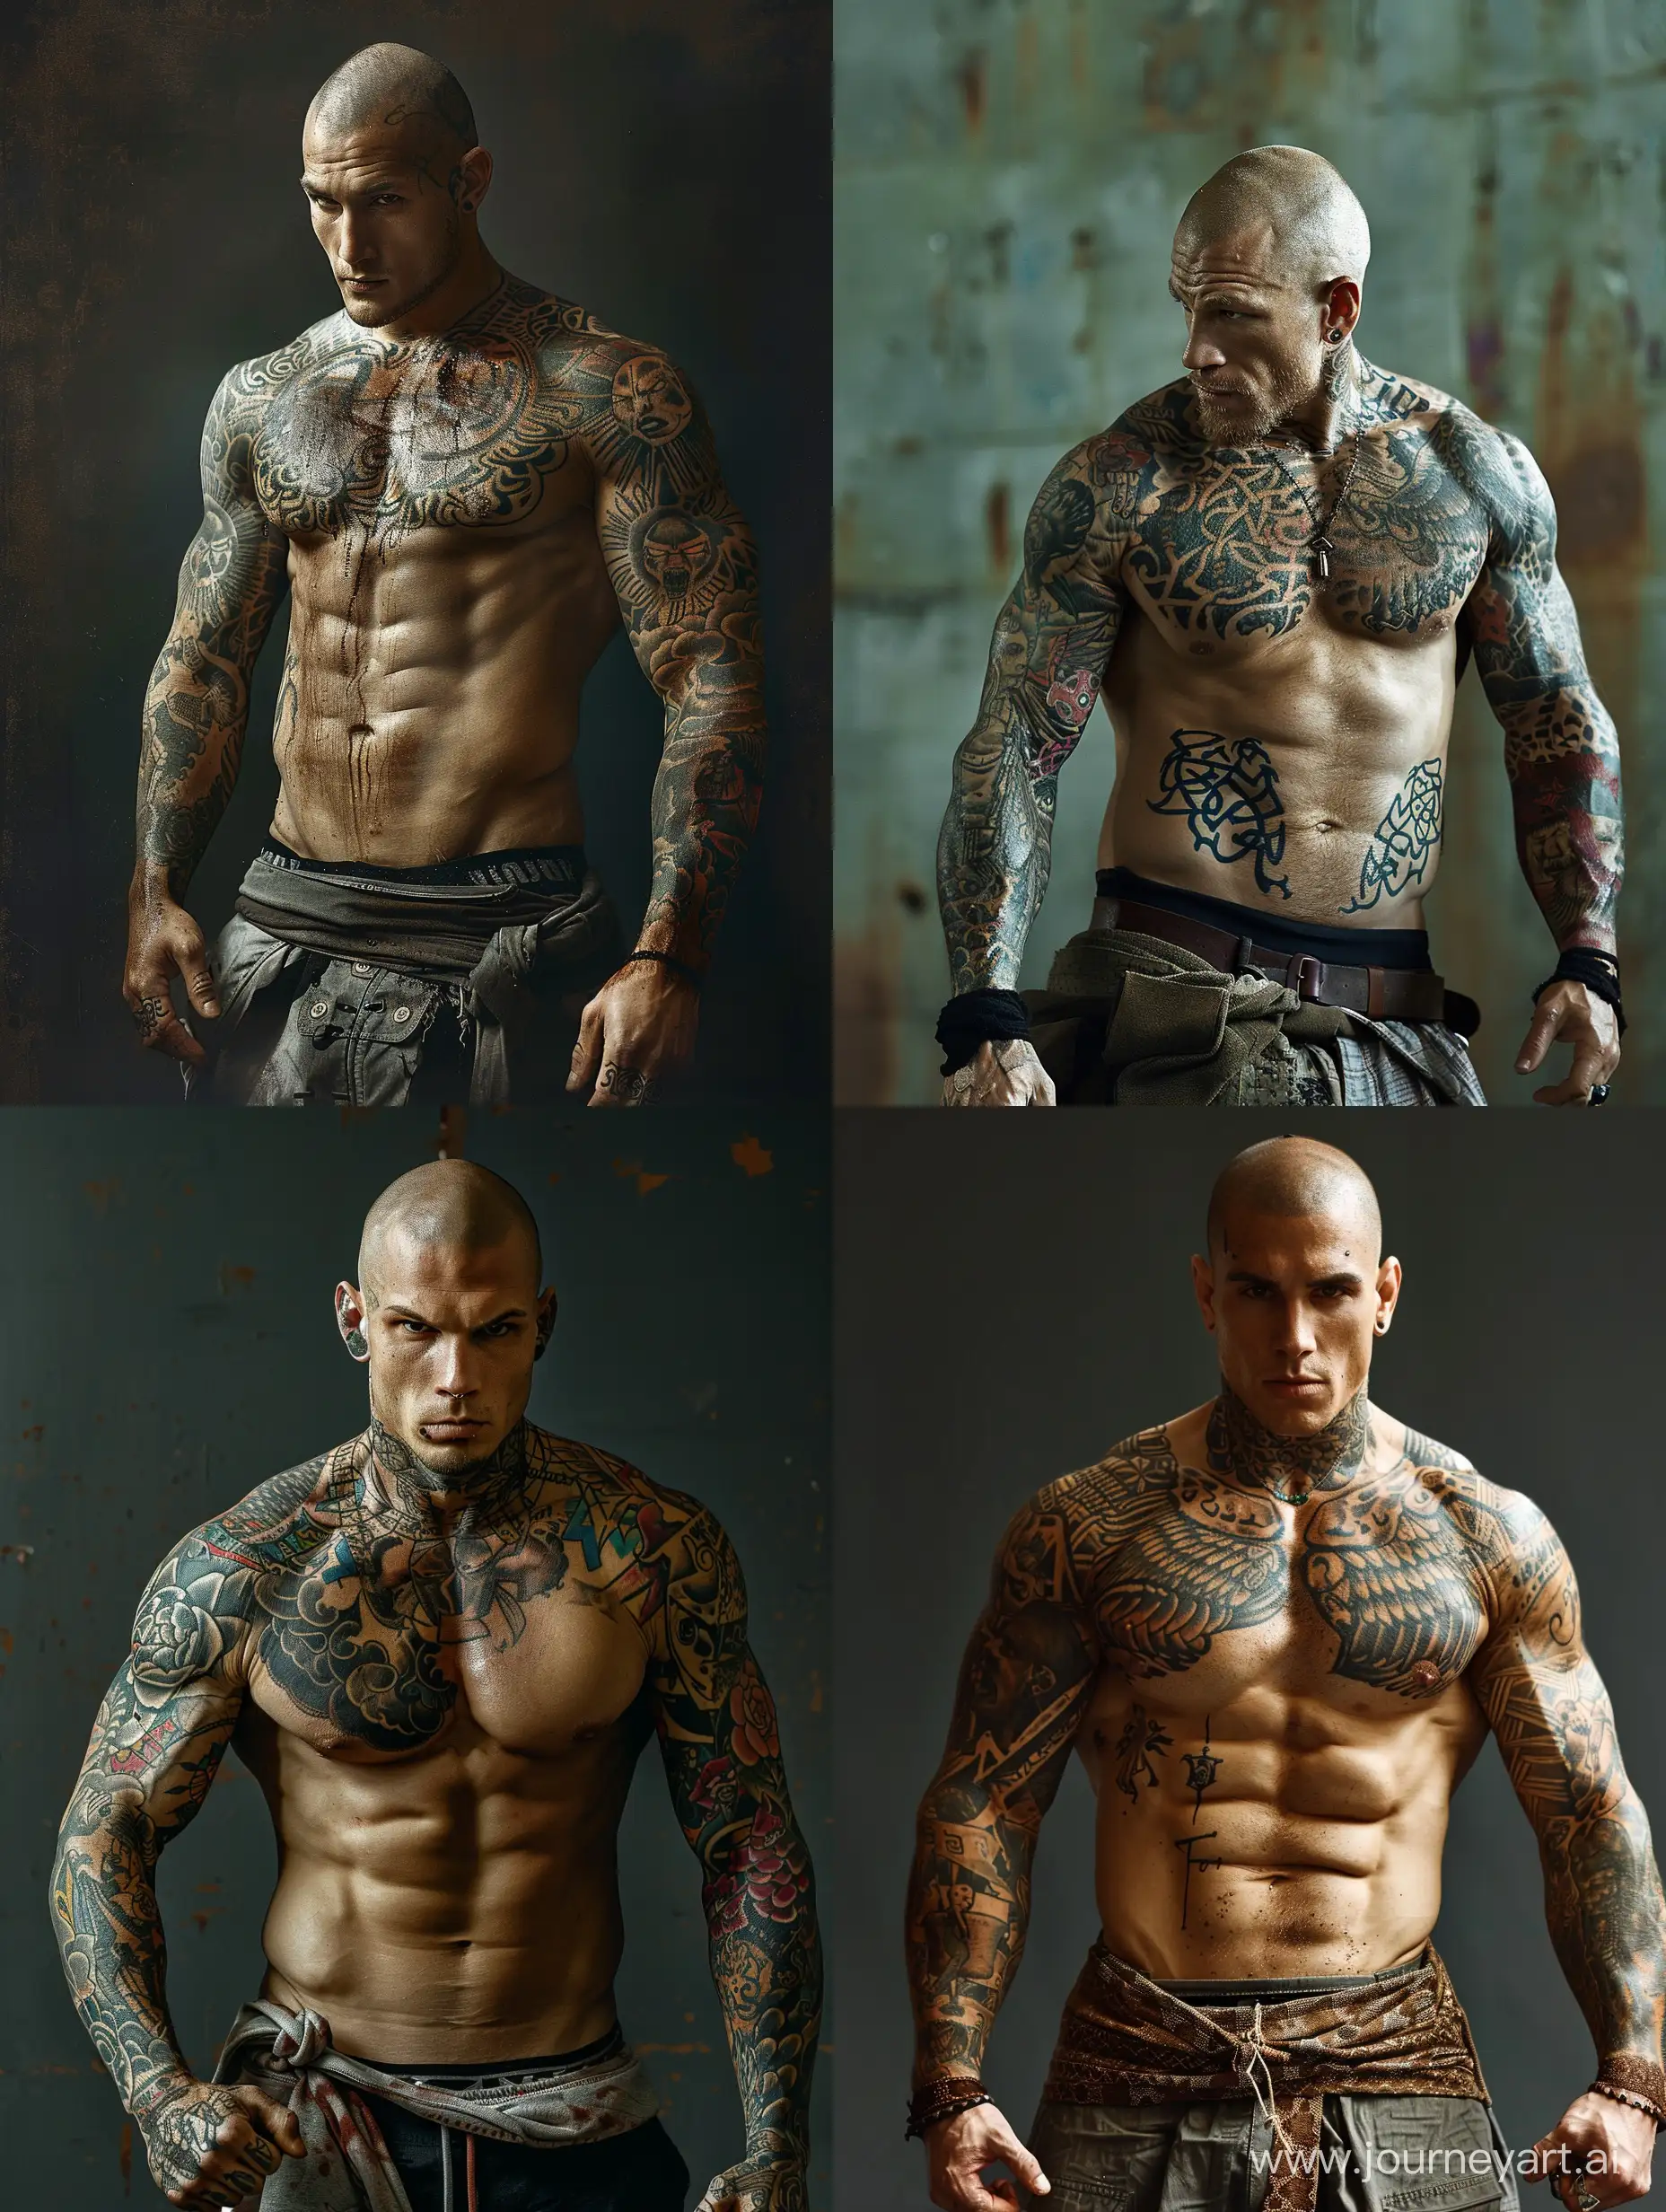 Лысый, мускулистый мужик, всё его тело в татуировках, голый торс, боец на арене, дерётся в рукопашную. 